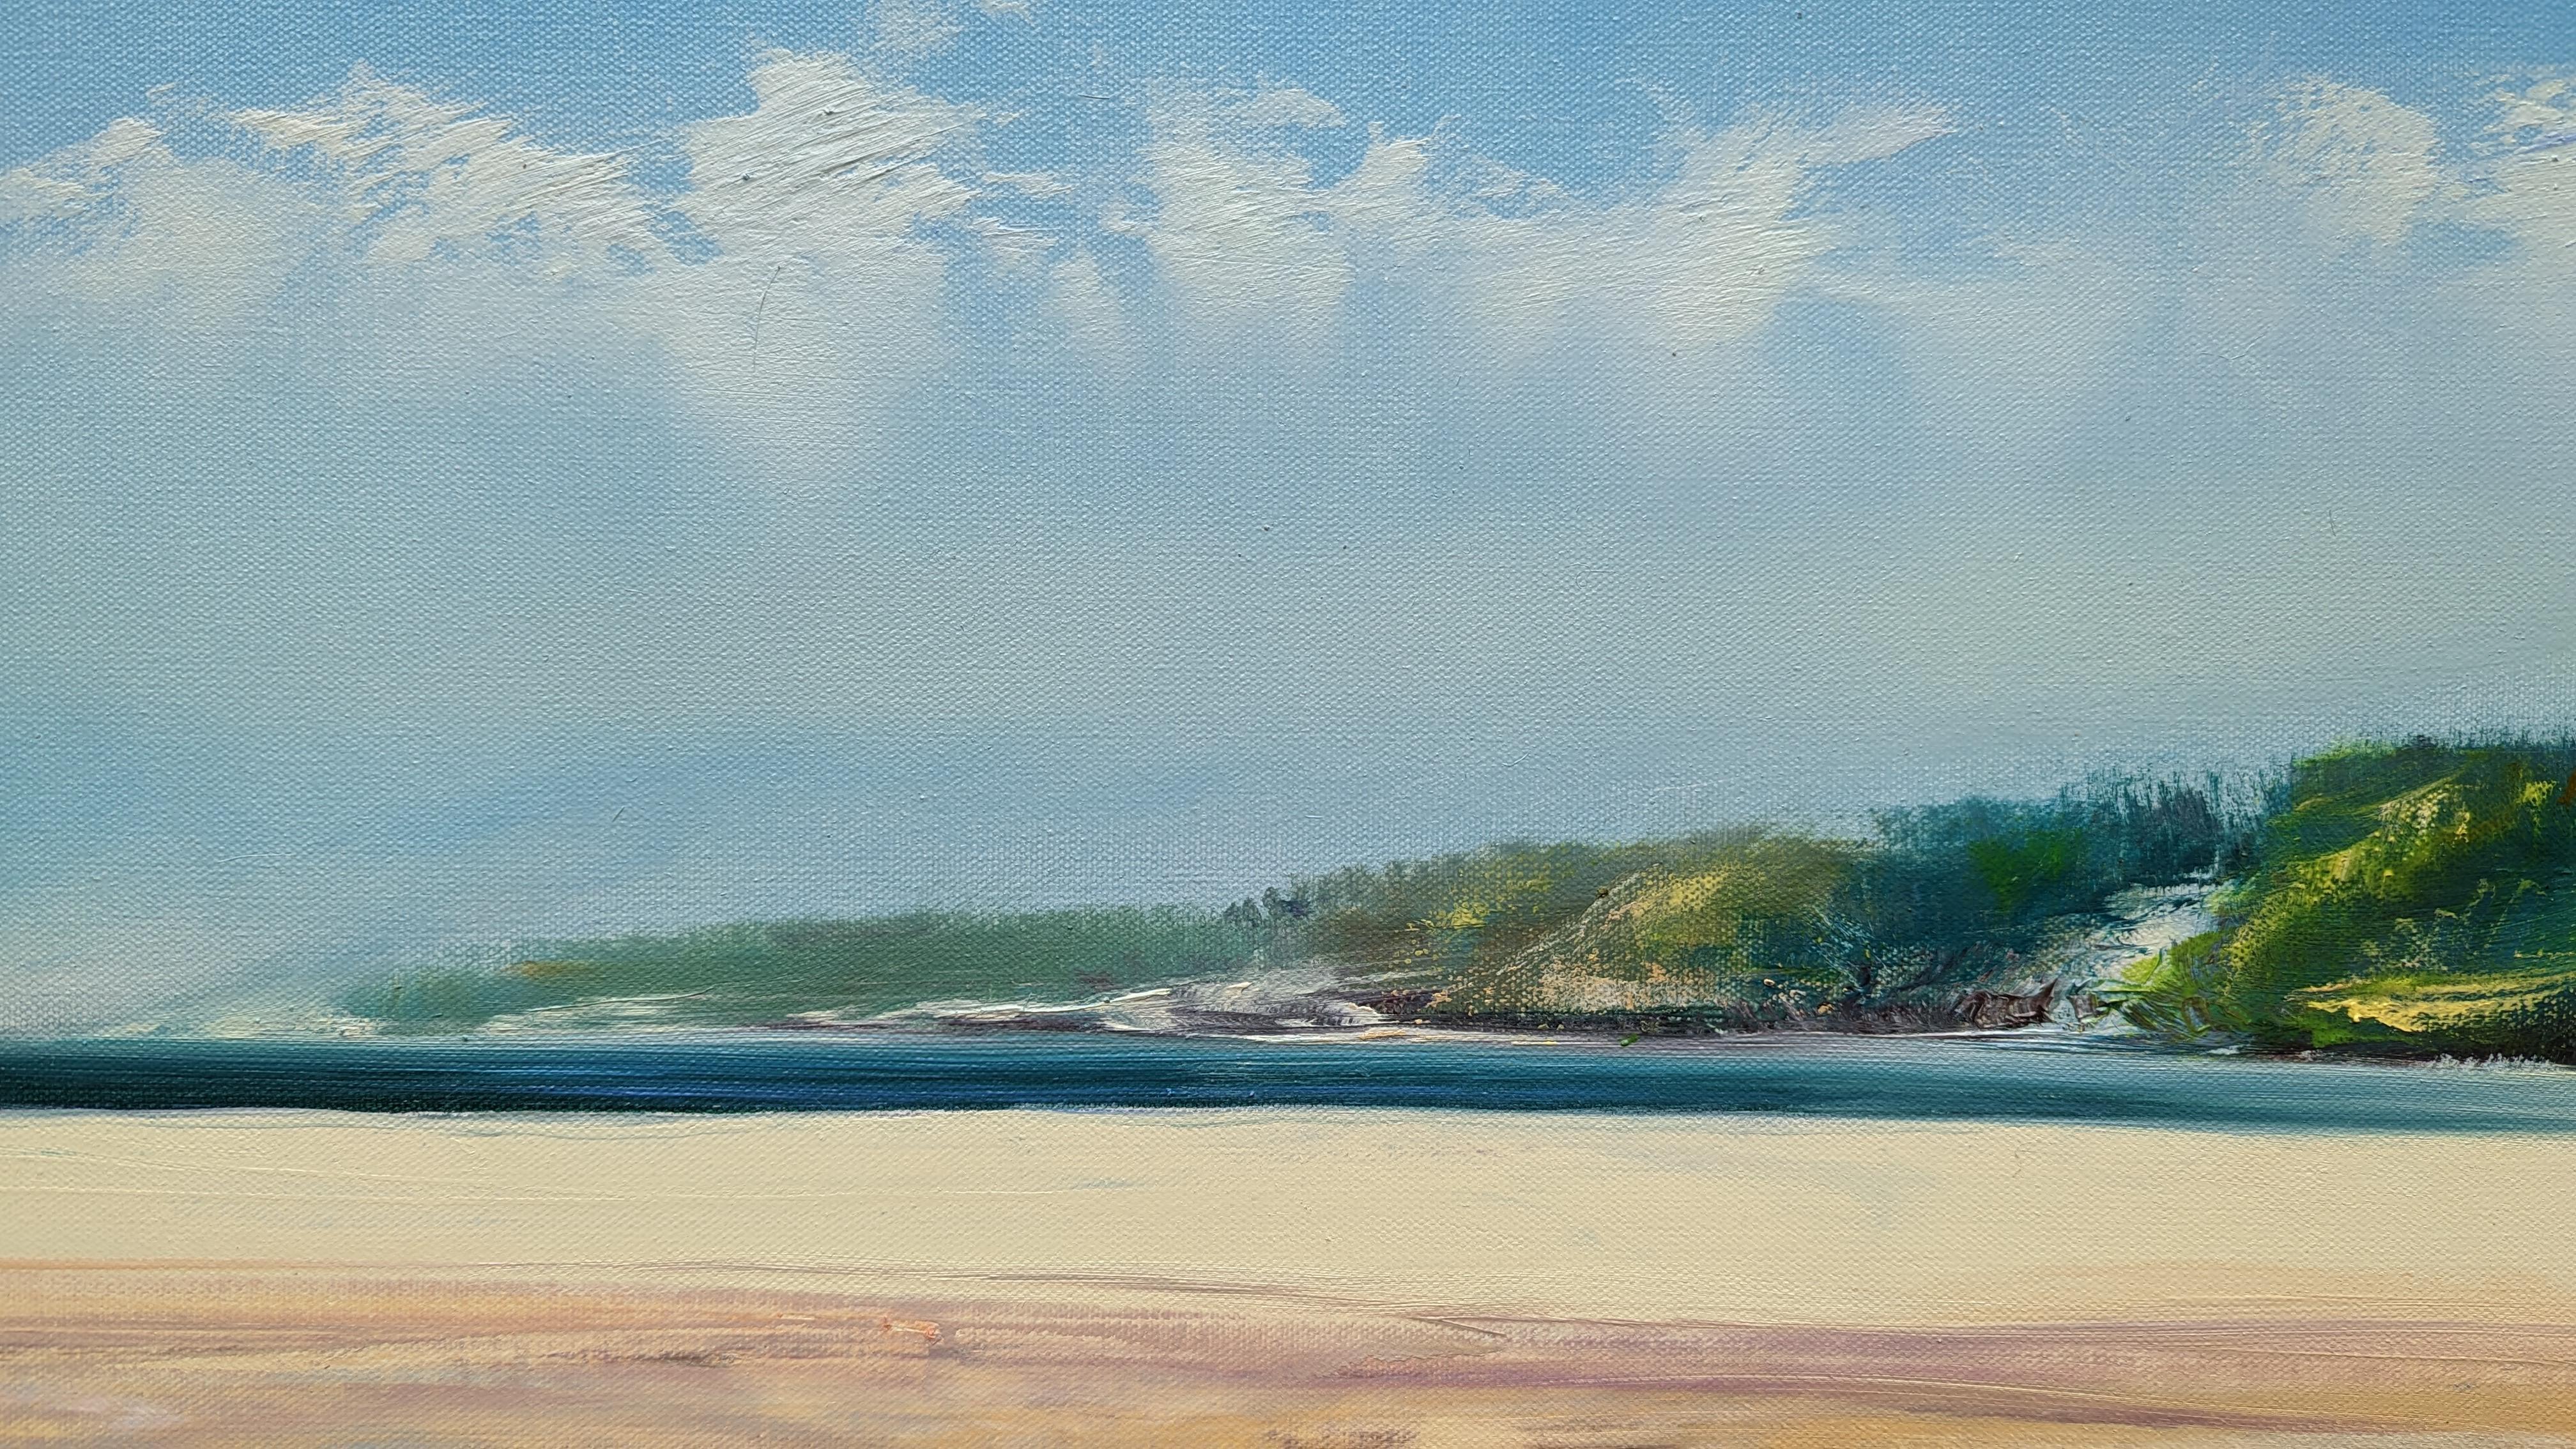 <p>Commentaires de l'artiste<br>L'artiste George Peebles présente une vue panoramique de la côte avec une approche impressionniste. Un lieu privilégié pour se recueillir. Le ciel, la mer et le sable créent un paysage marin harmonieux et séduisant.